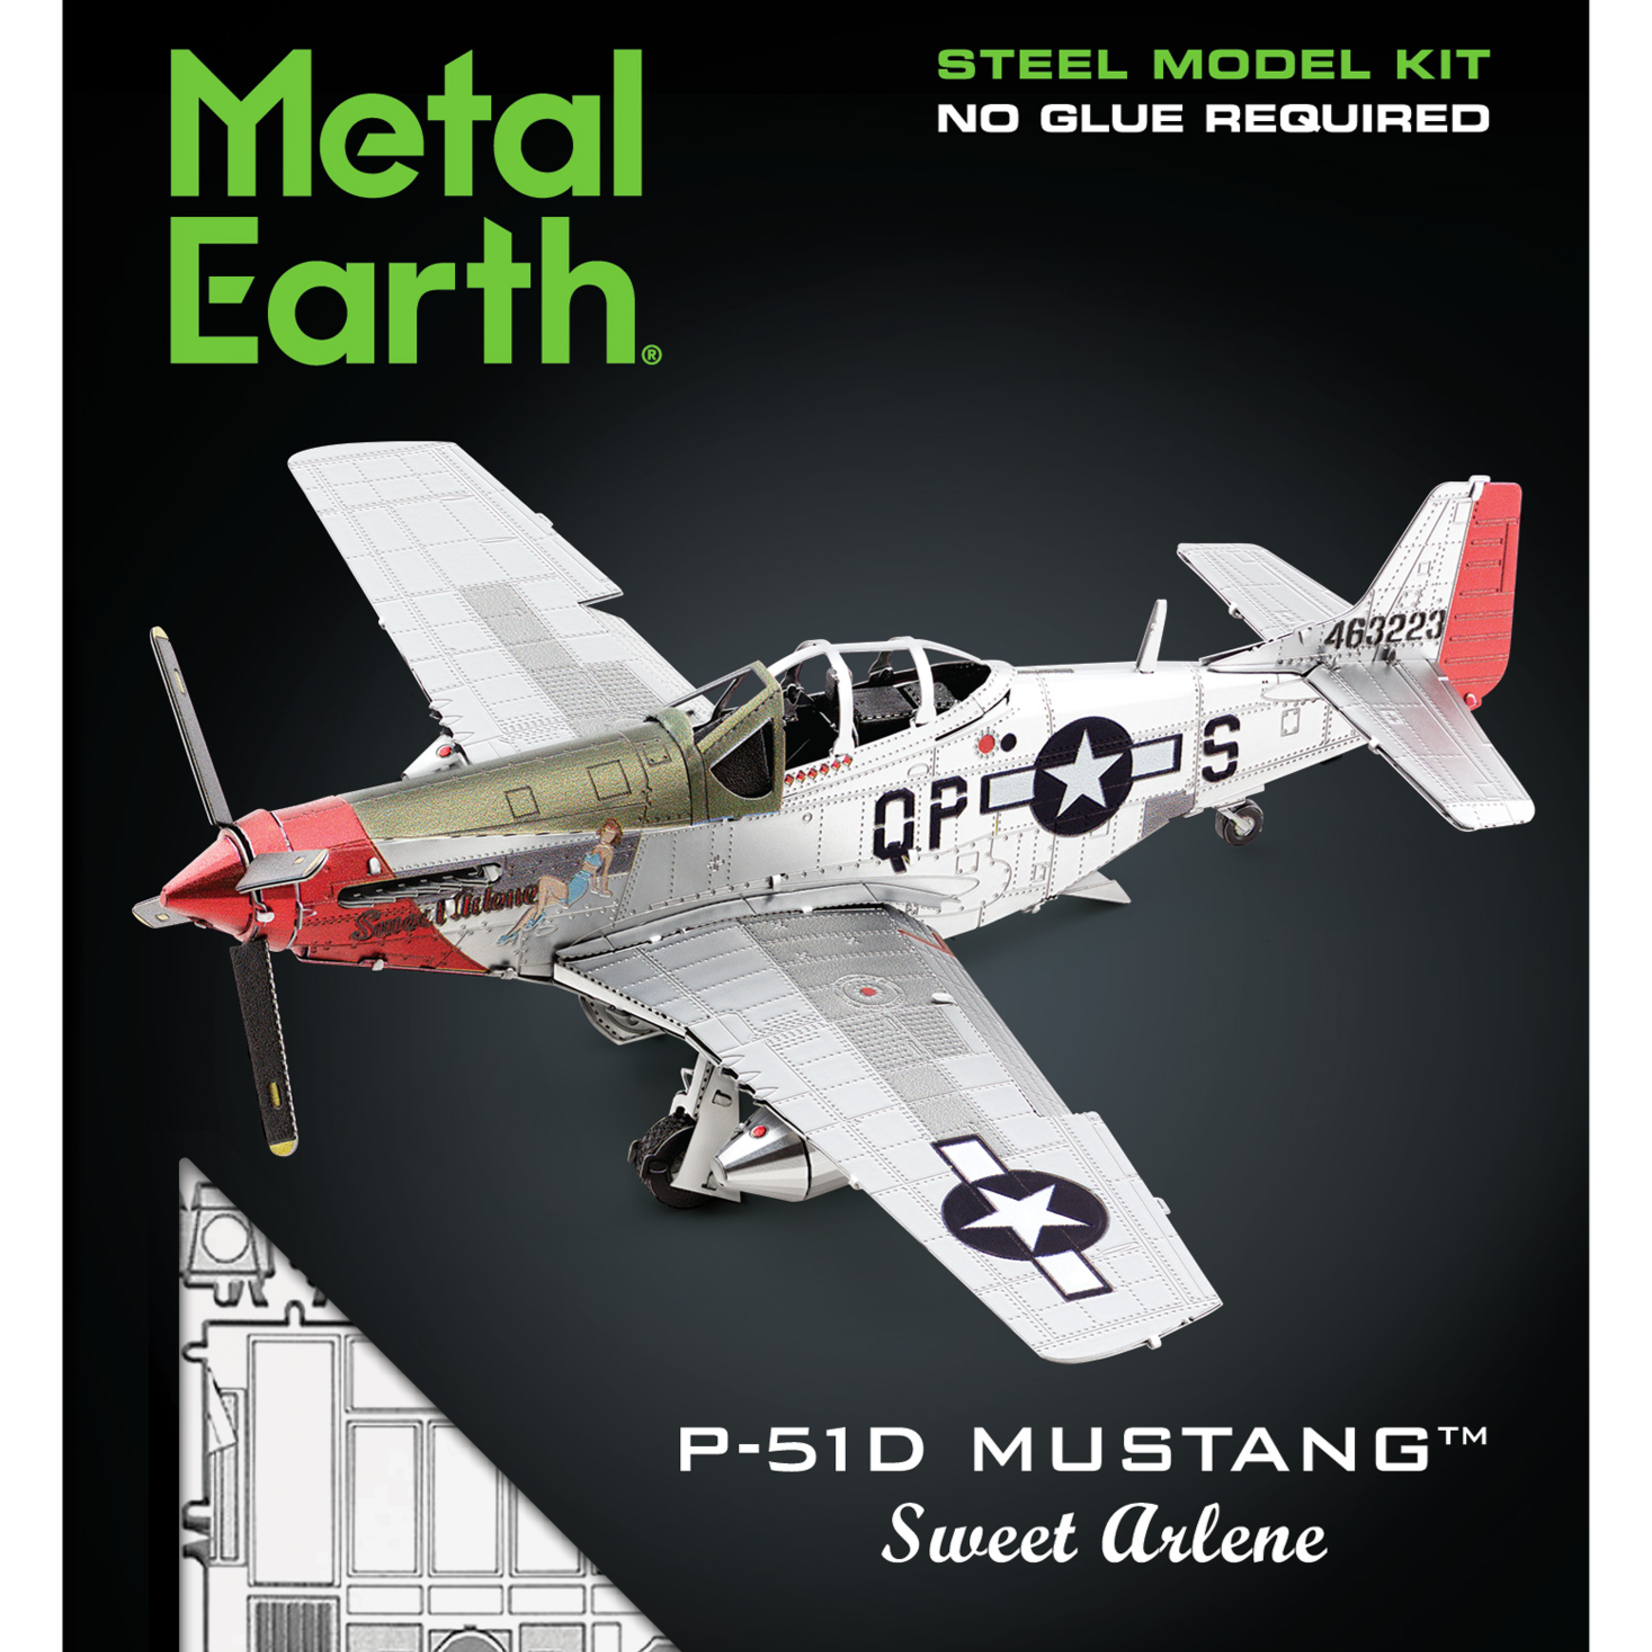 Metal Earth Metal Earth - P-51D Mustang Sweet Arlene